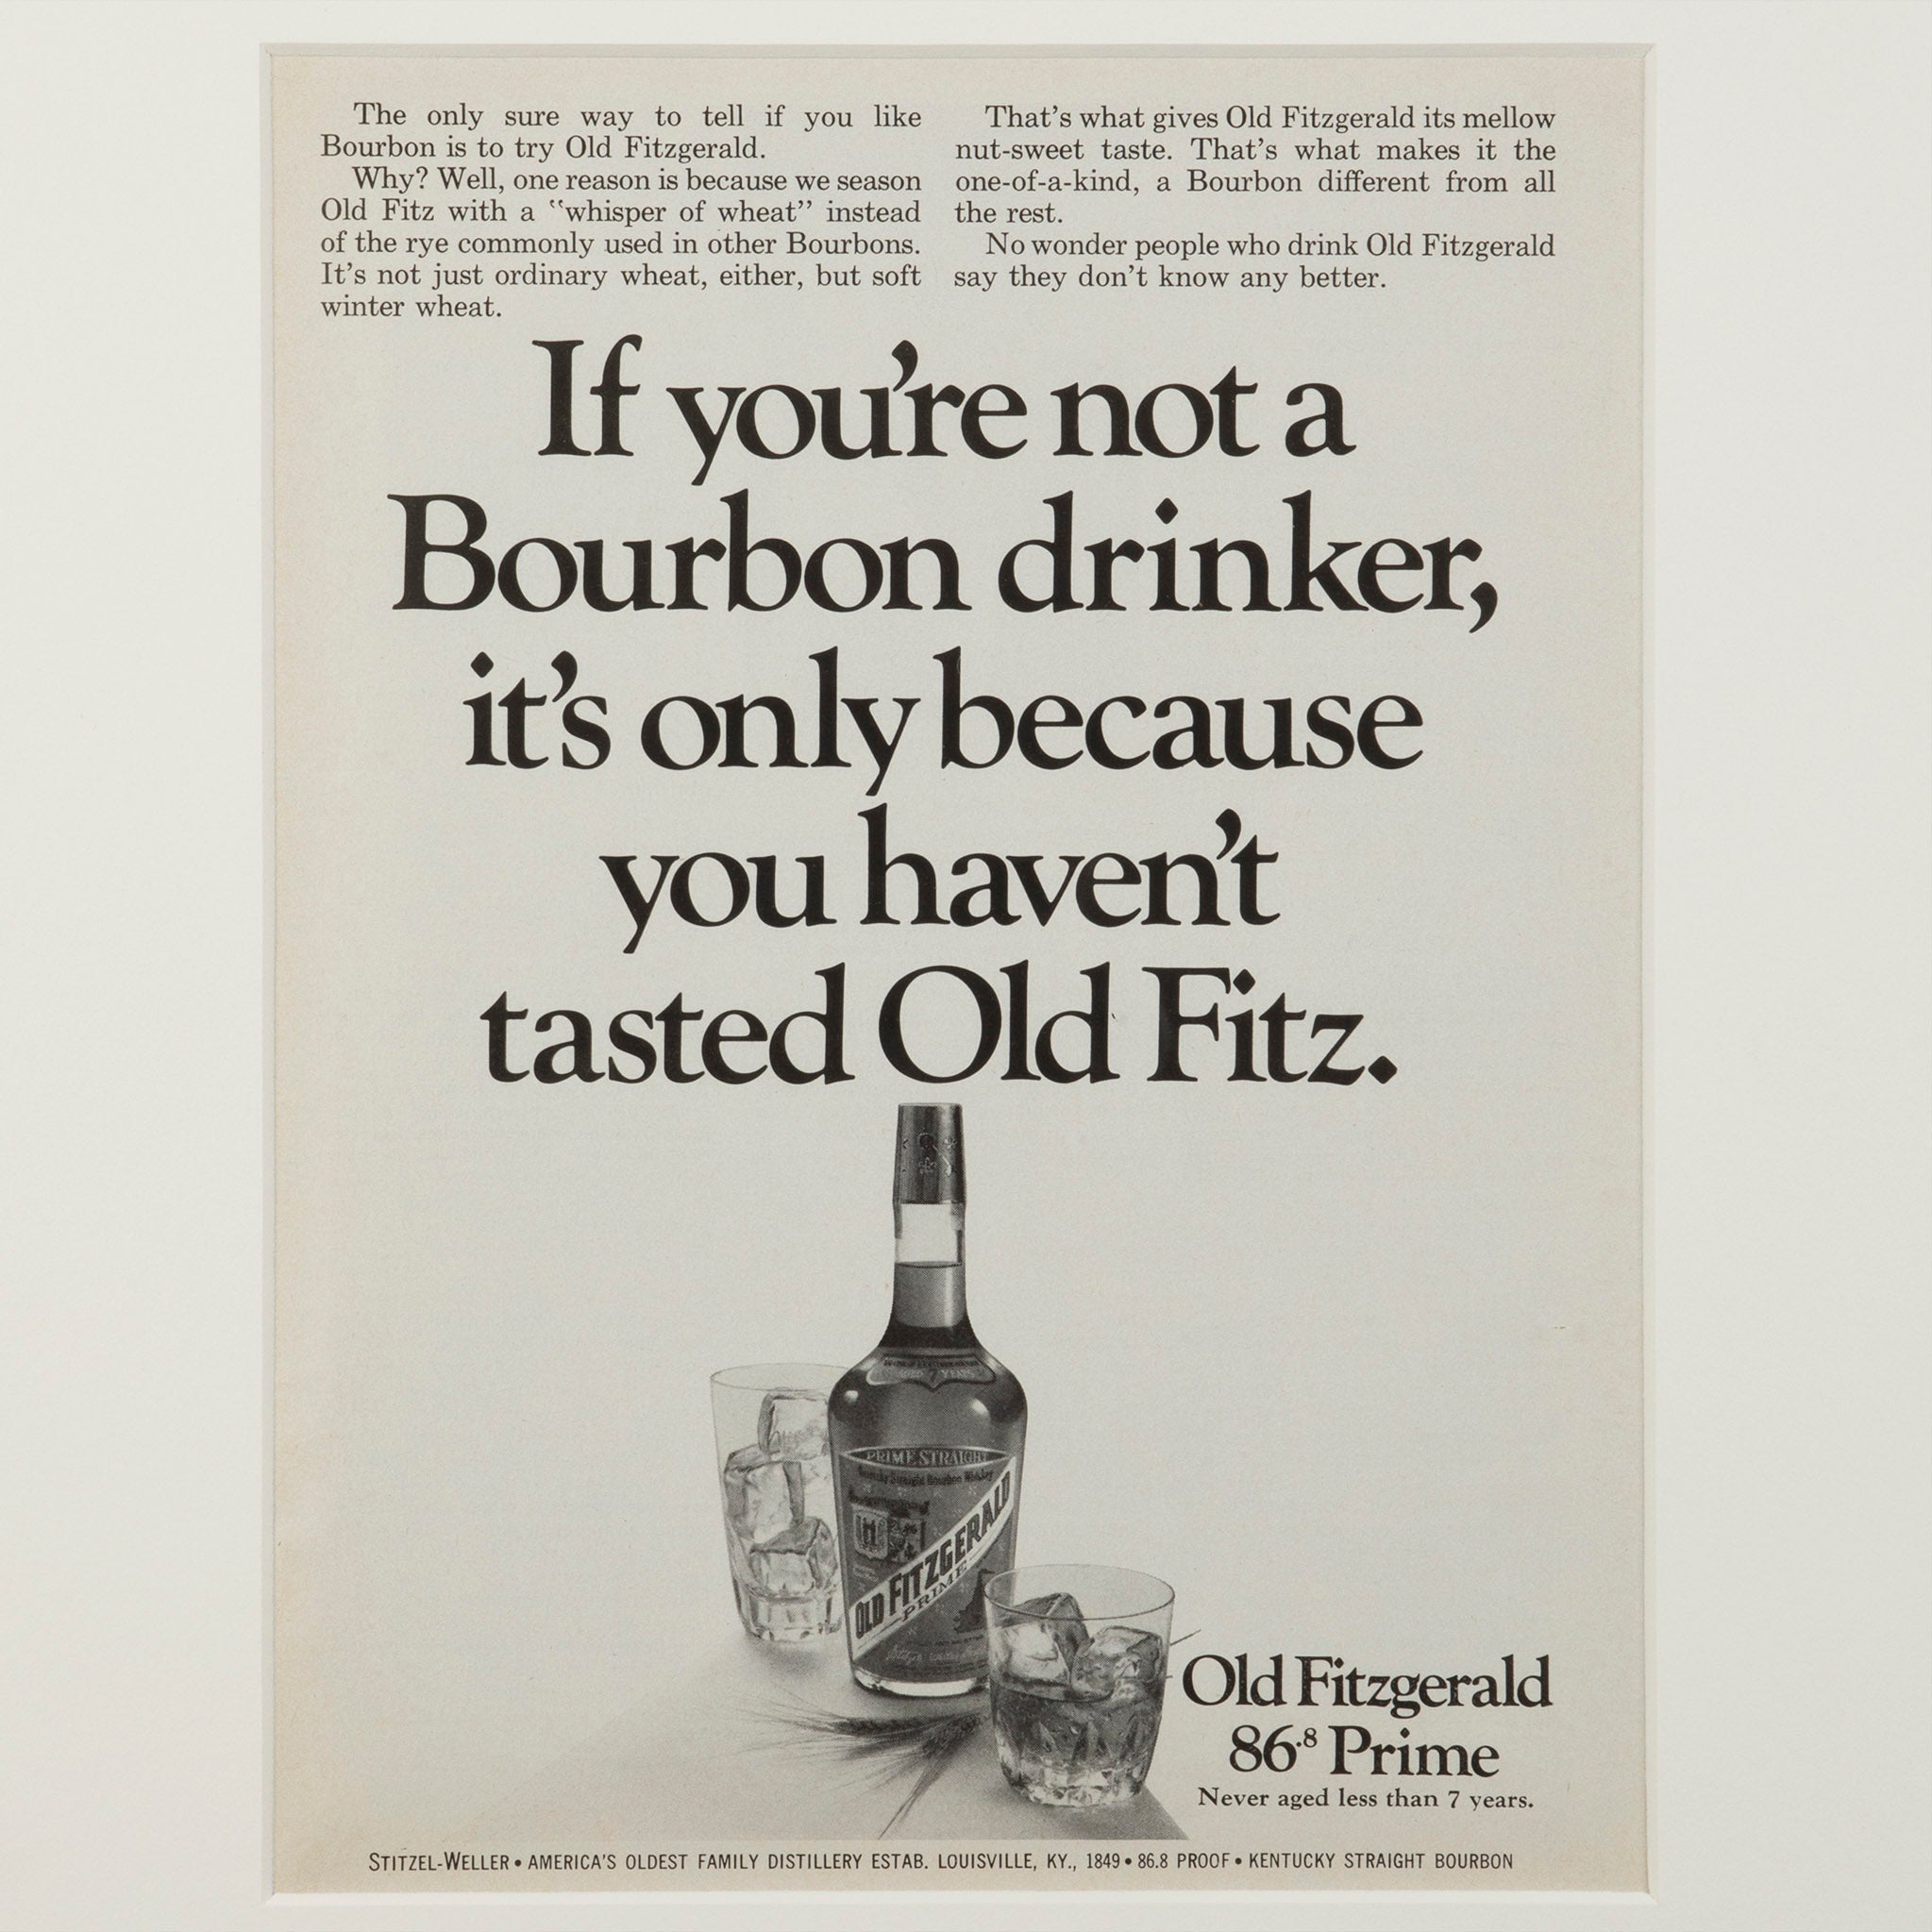 Framed Old Fitz Bourbon Drinker Advertisement